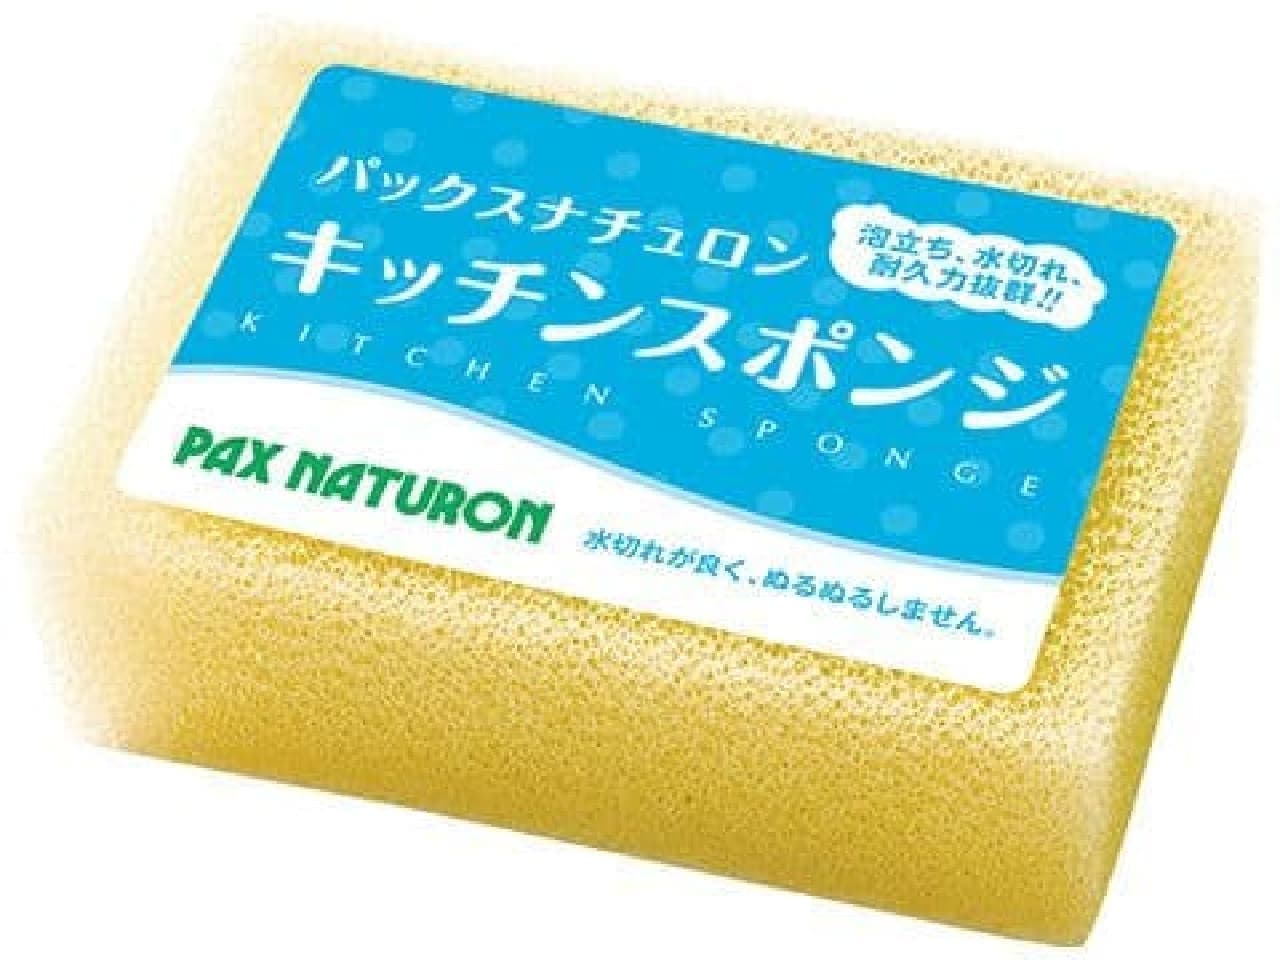 Taiyo Yushi “Pax Naturon Kitchen Sponge”